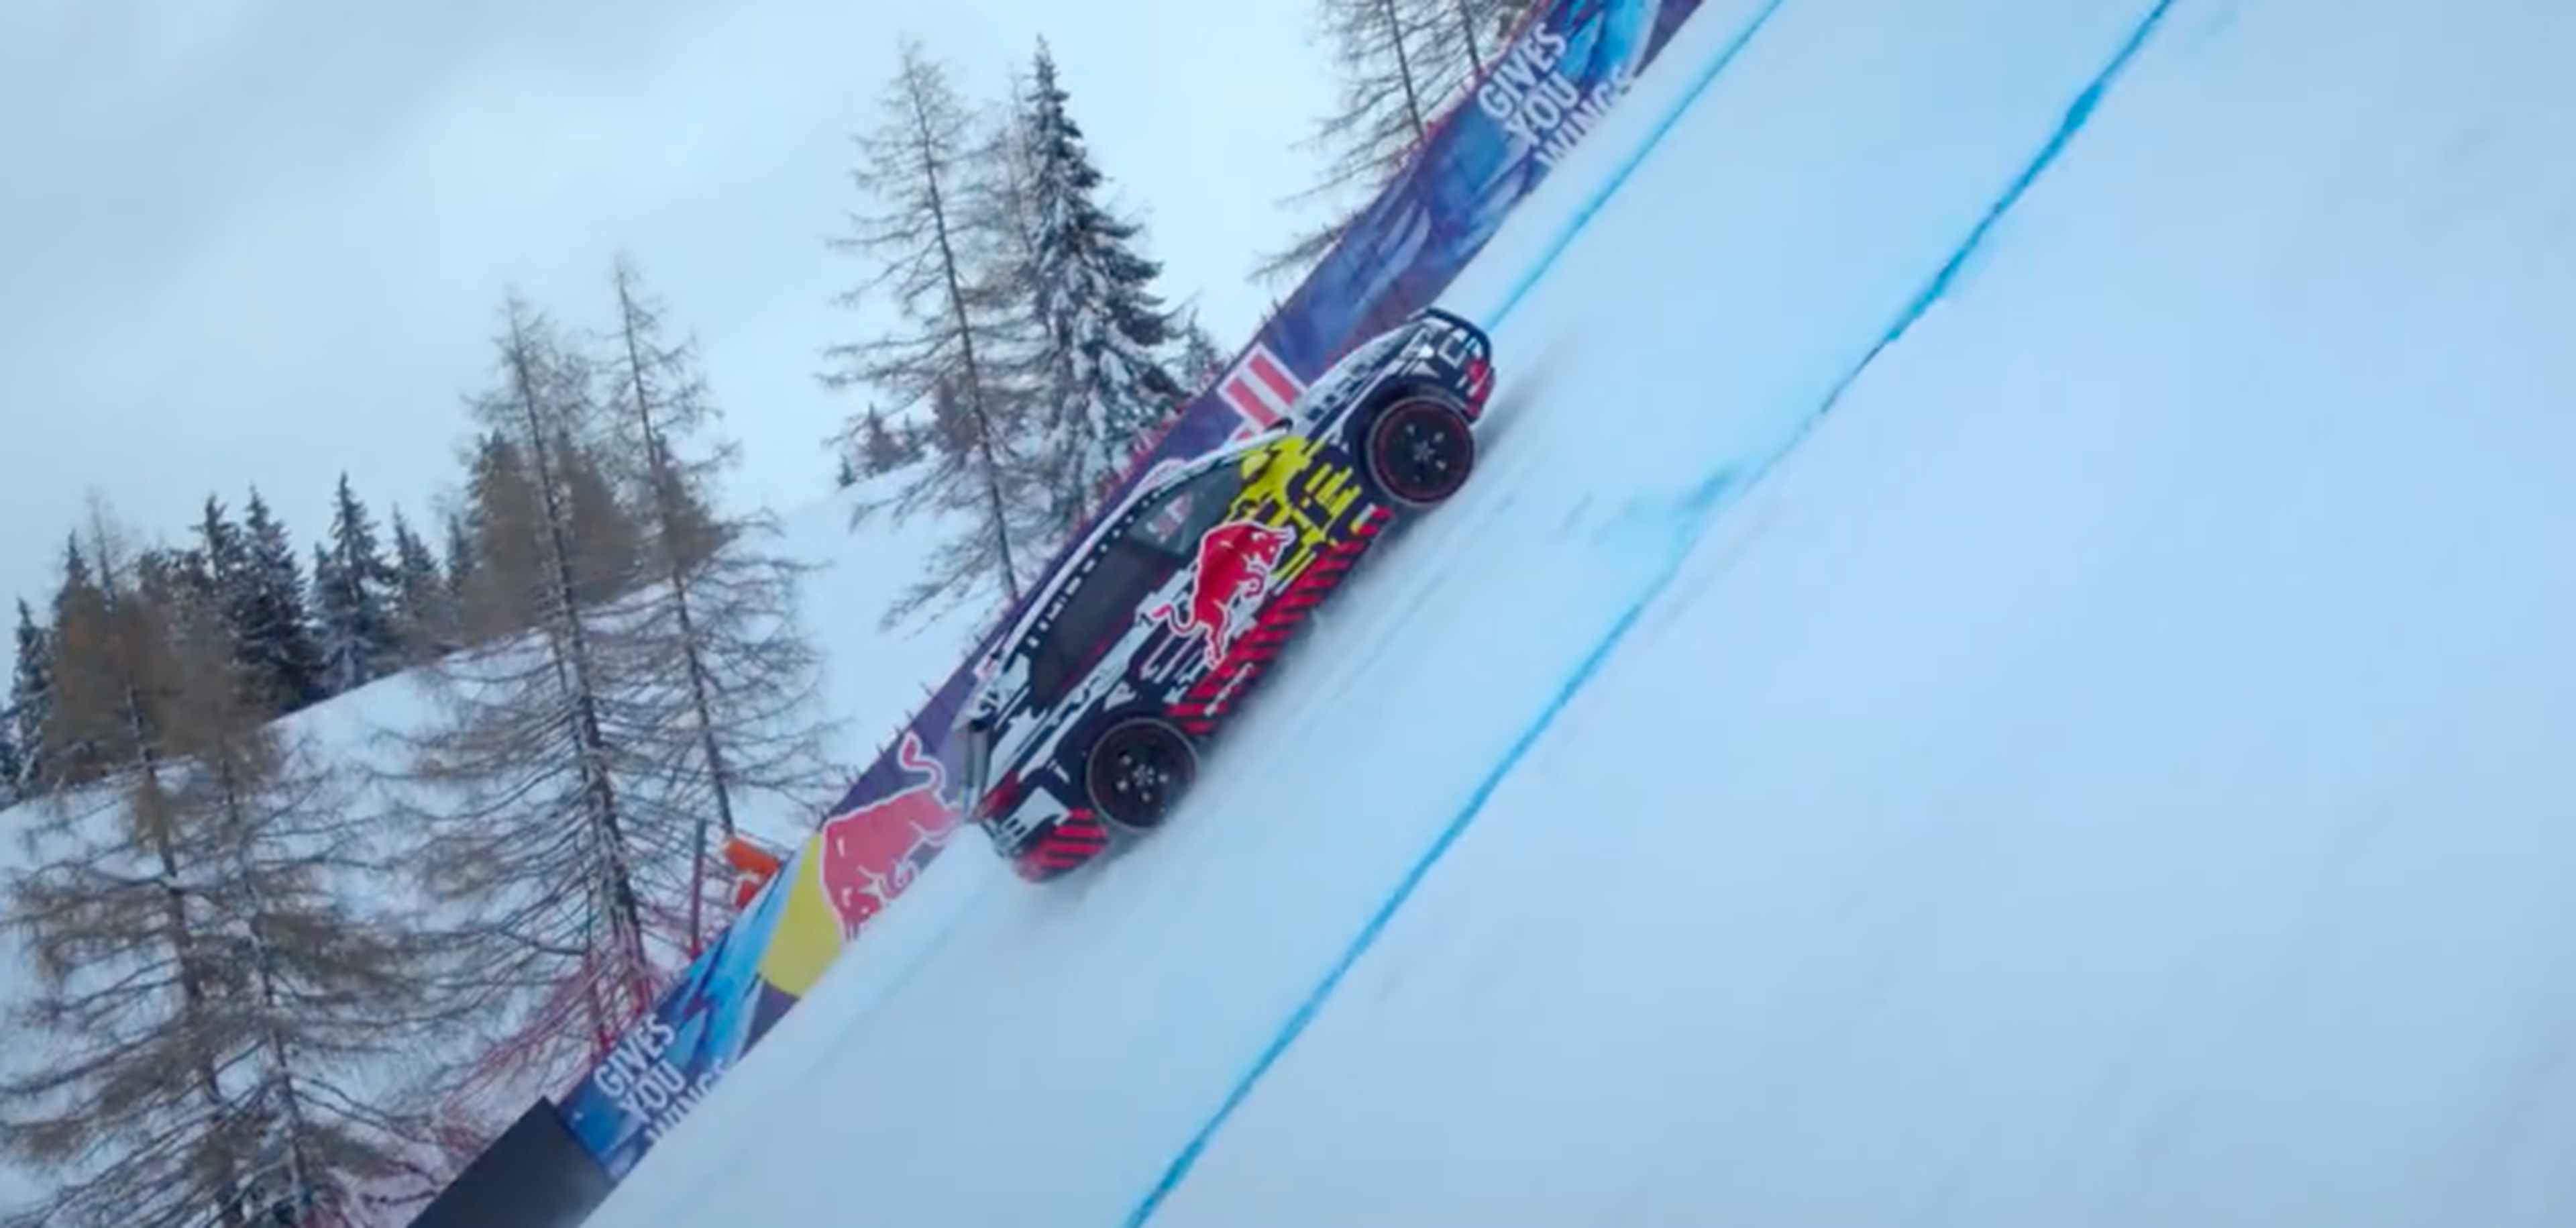 VÍDEO: el Audi e-tron demuestra sus límites trepando en una pista de esquí